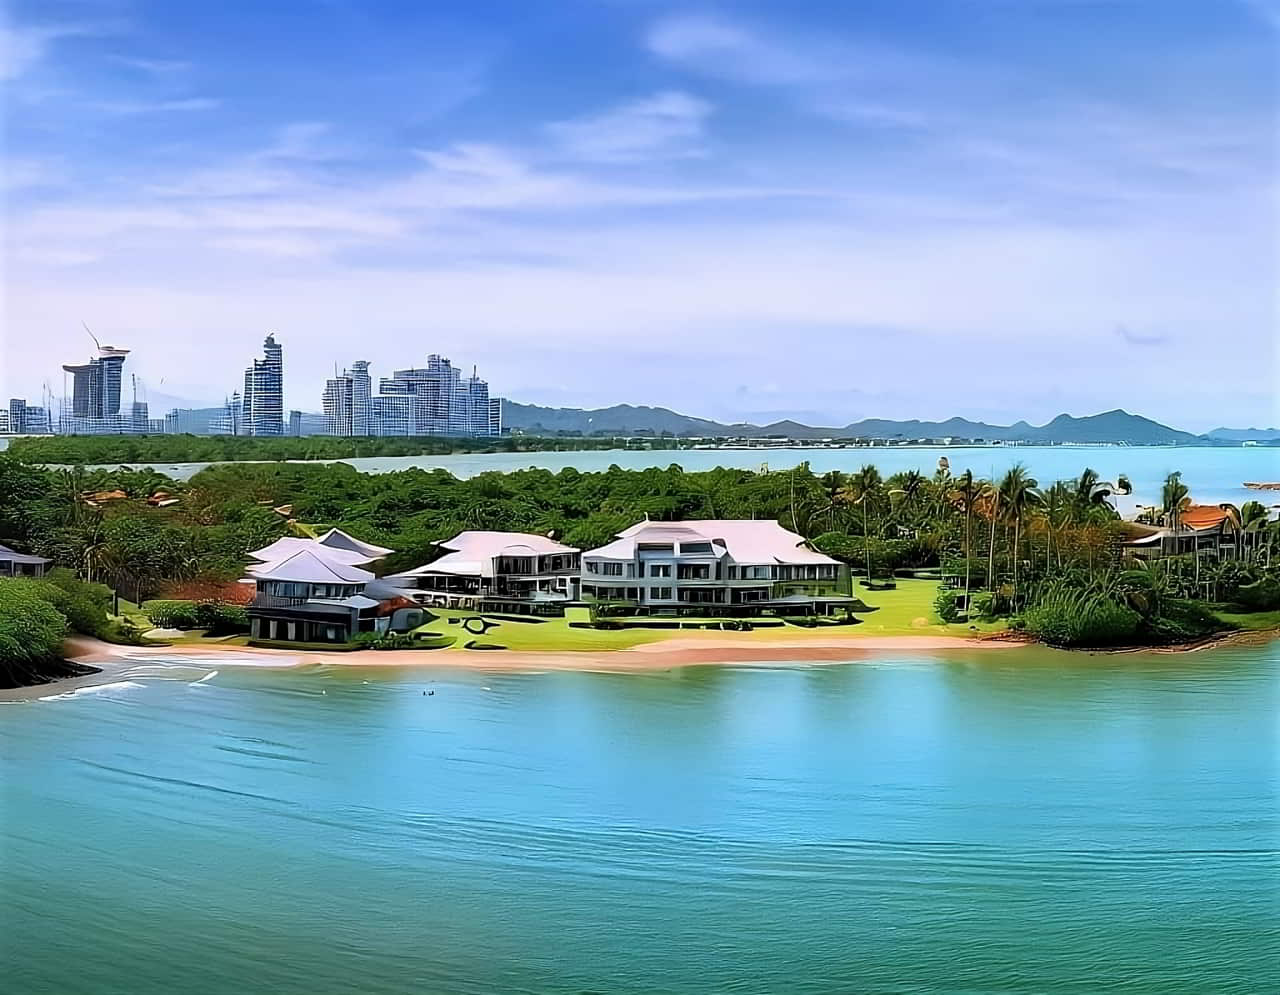  Acheter des Biens Immobiliers en Thaïlande : Conseils d'Expert de Keller Henson